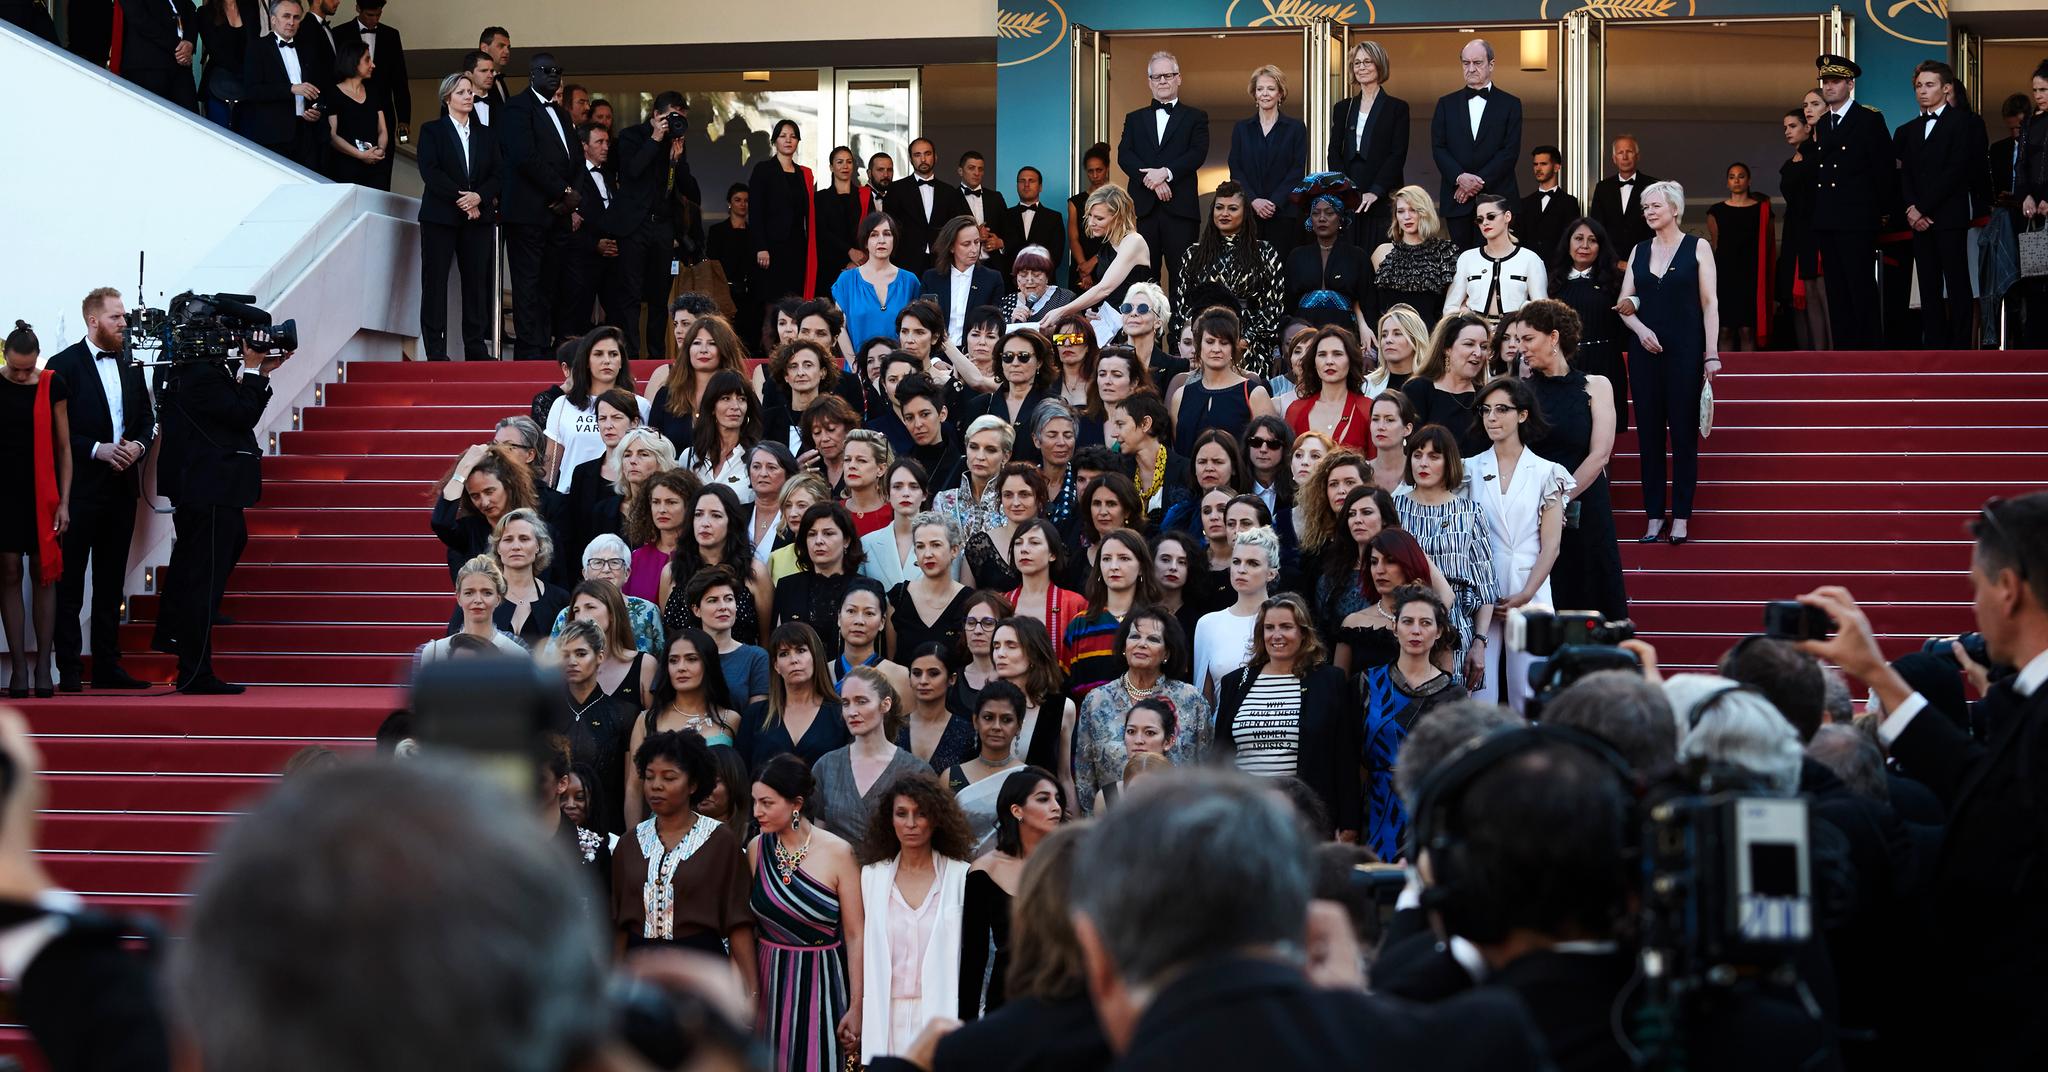 82 kvinner samlet seg på trappene i Cannes lørdag kveld for å markere at de ønsker endring i filmbransjen etter #metoo. Antallet er det samme som kvinnene som har hatt film med i programmet i Cannes gjennom tidene. 